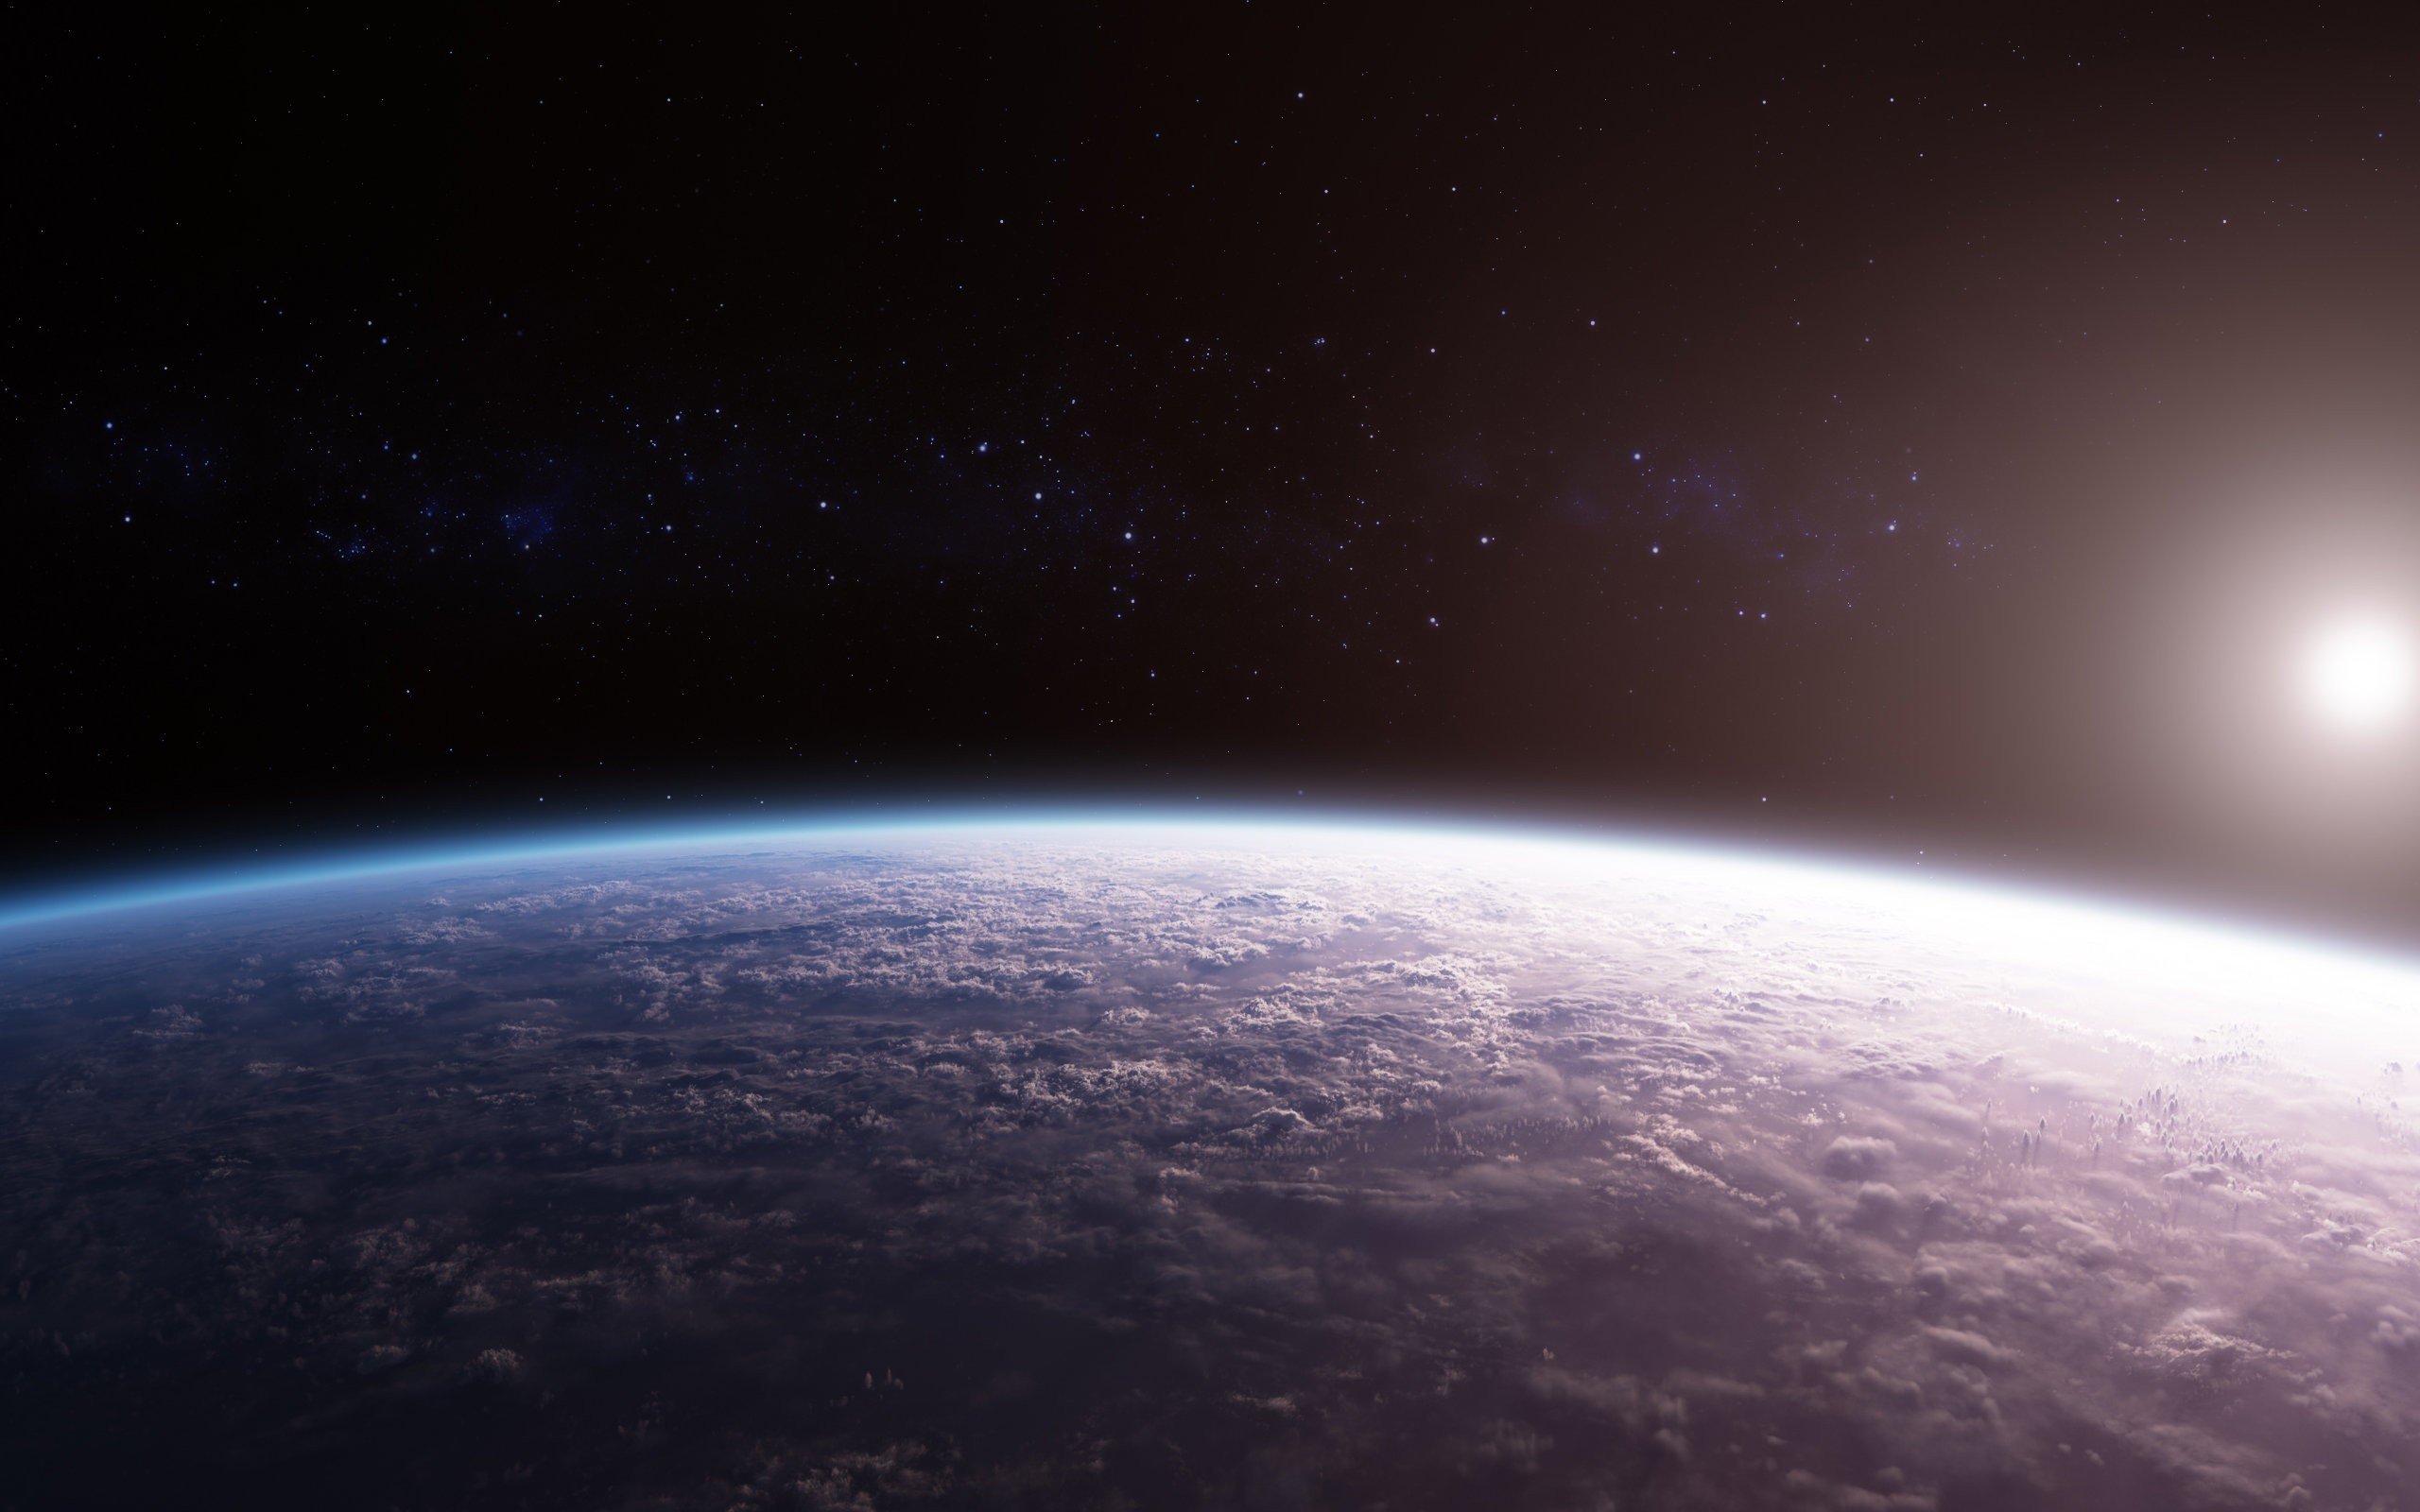 фото планет из космоса высокого разрешения